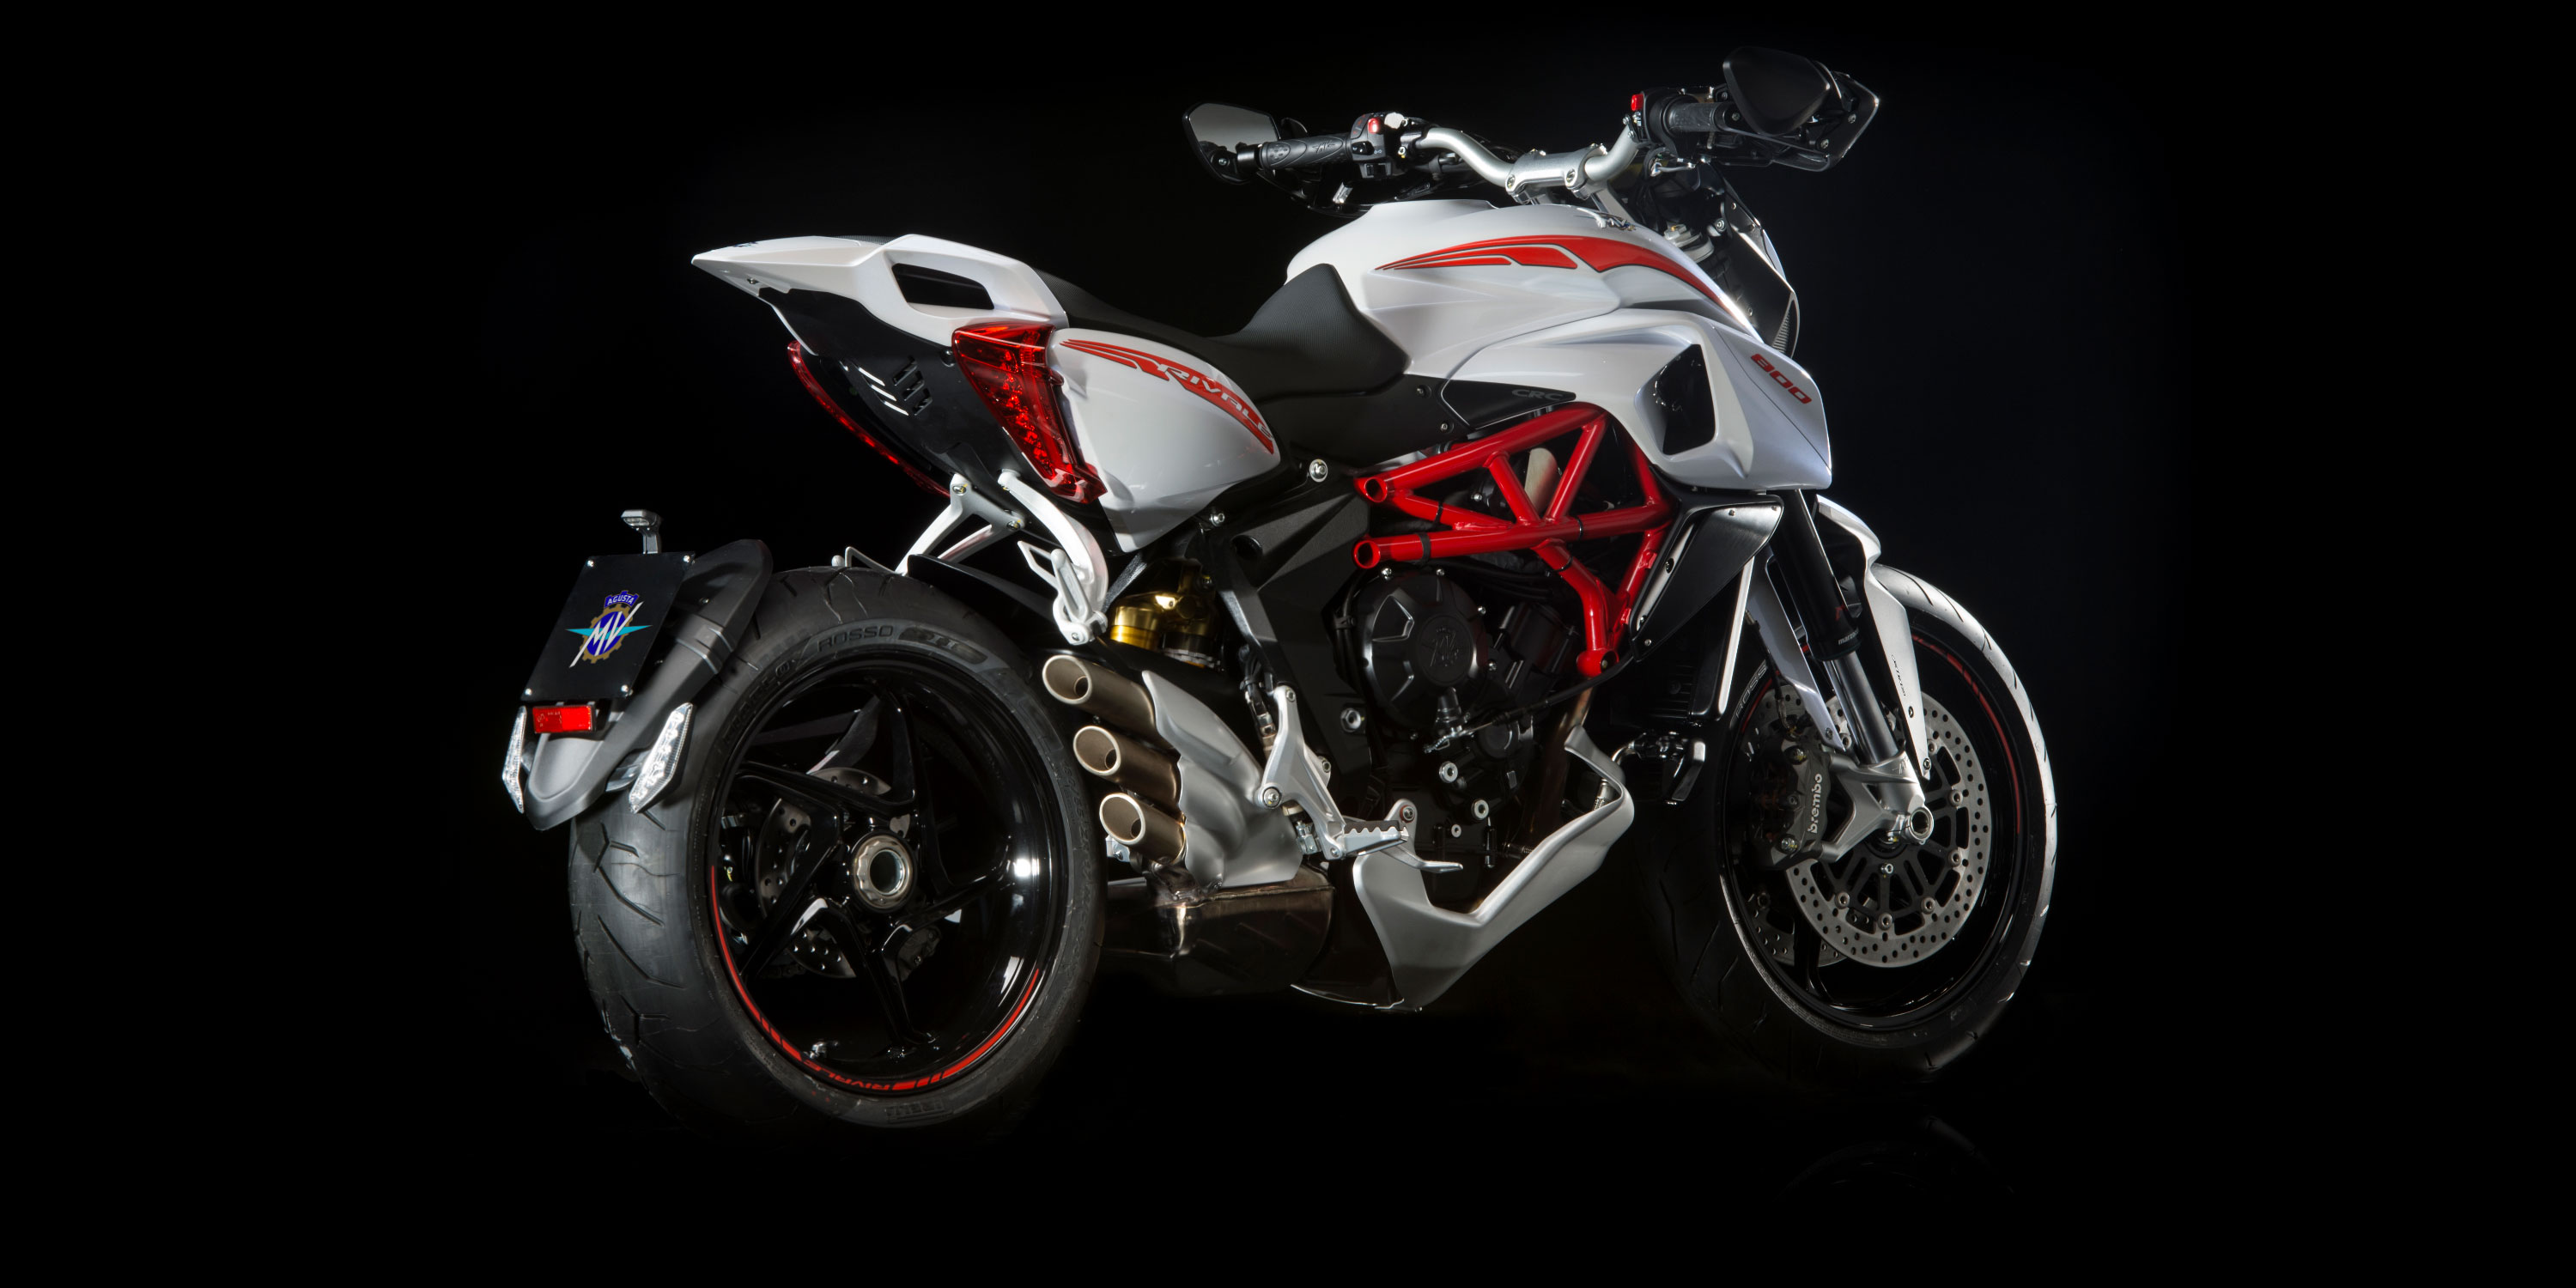 BMF2014 MV Agusta Rivale 800 chiếc nakedbike mạnh mẽ và hầm hố đến từ  nước Ý